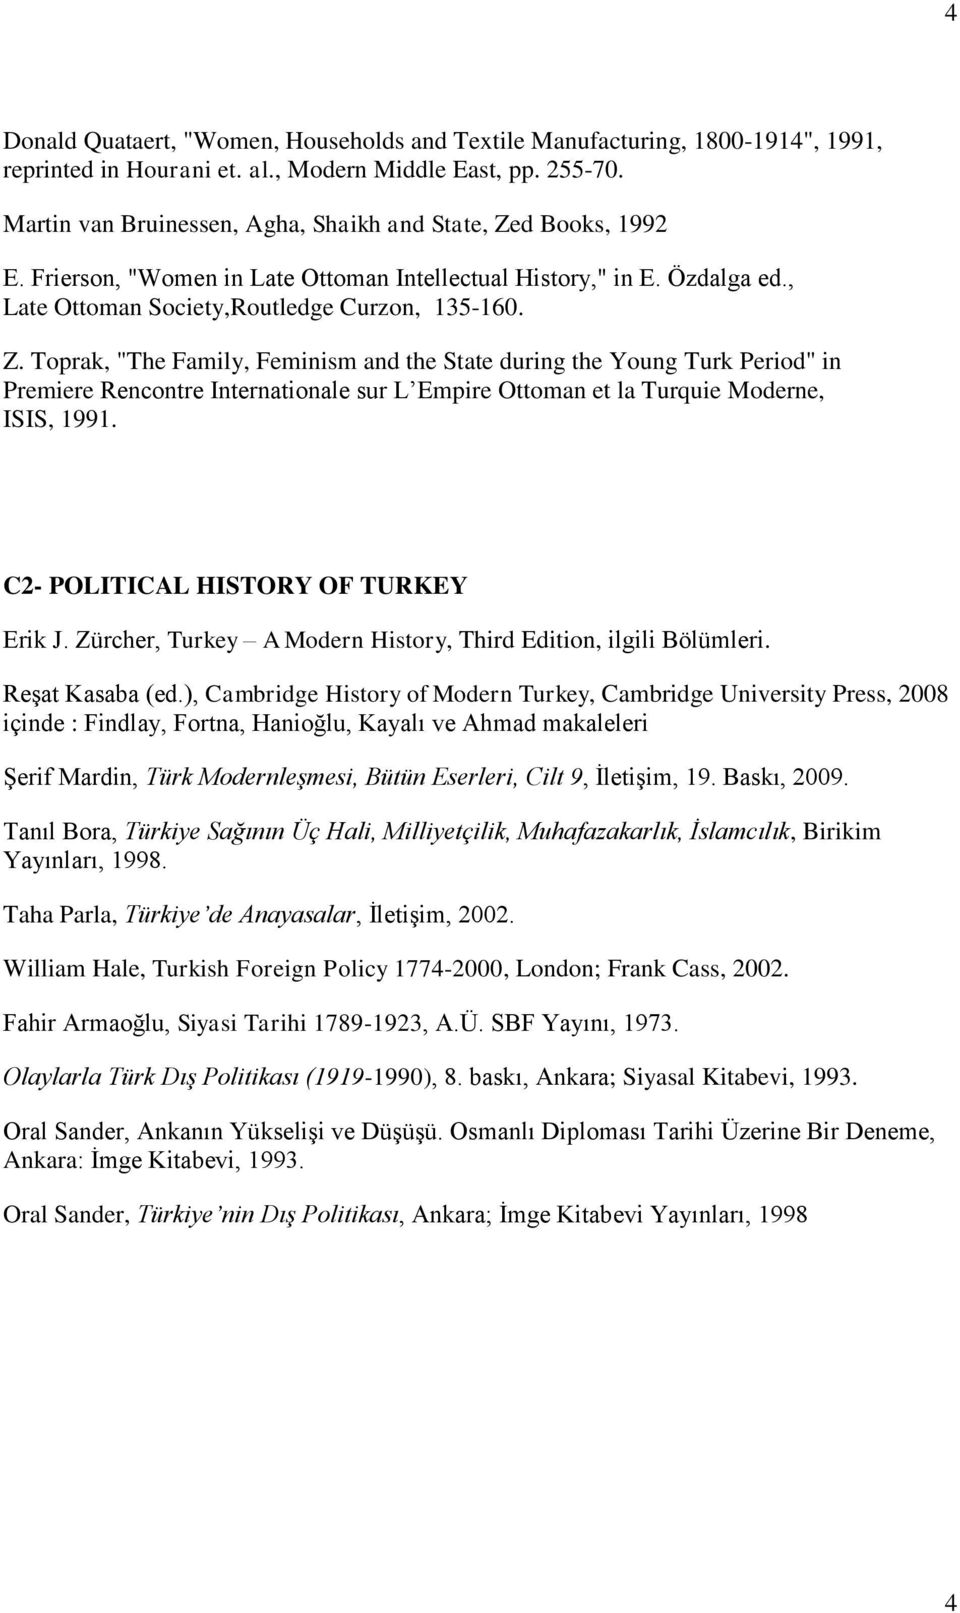 d Books, 1992 E. Frierson, "Women in Late Ottoman Intellectual History," in E. Özdalga ed., Late Ottoman Society,Routledge Curzon, 135-160. Z.